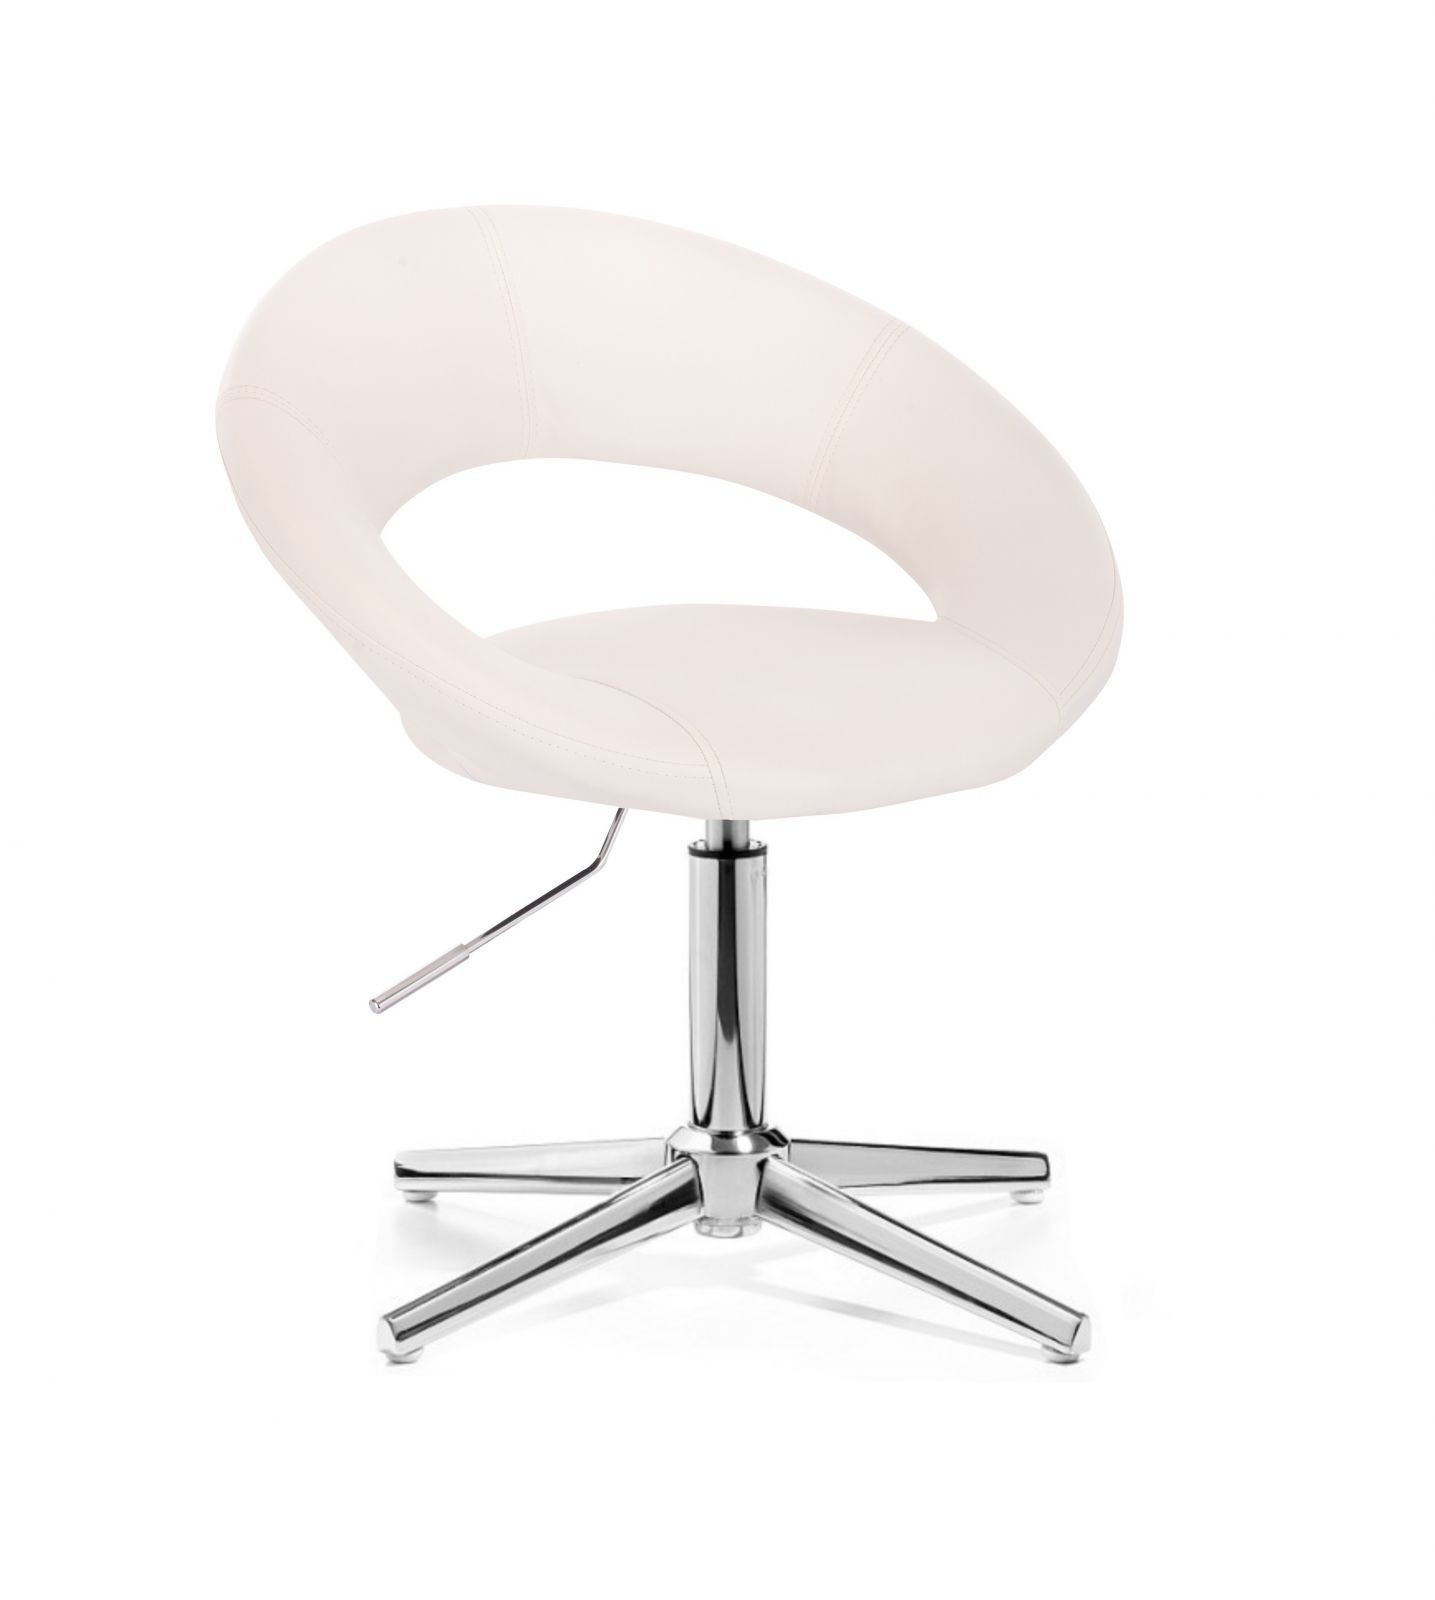 Kosmetická židle NAPOLI na stříbrném kříži - bílá